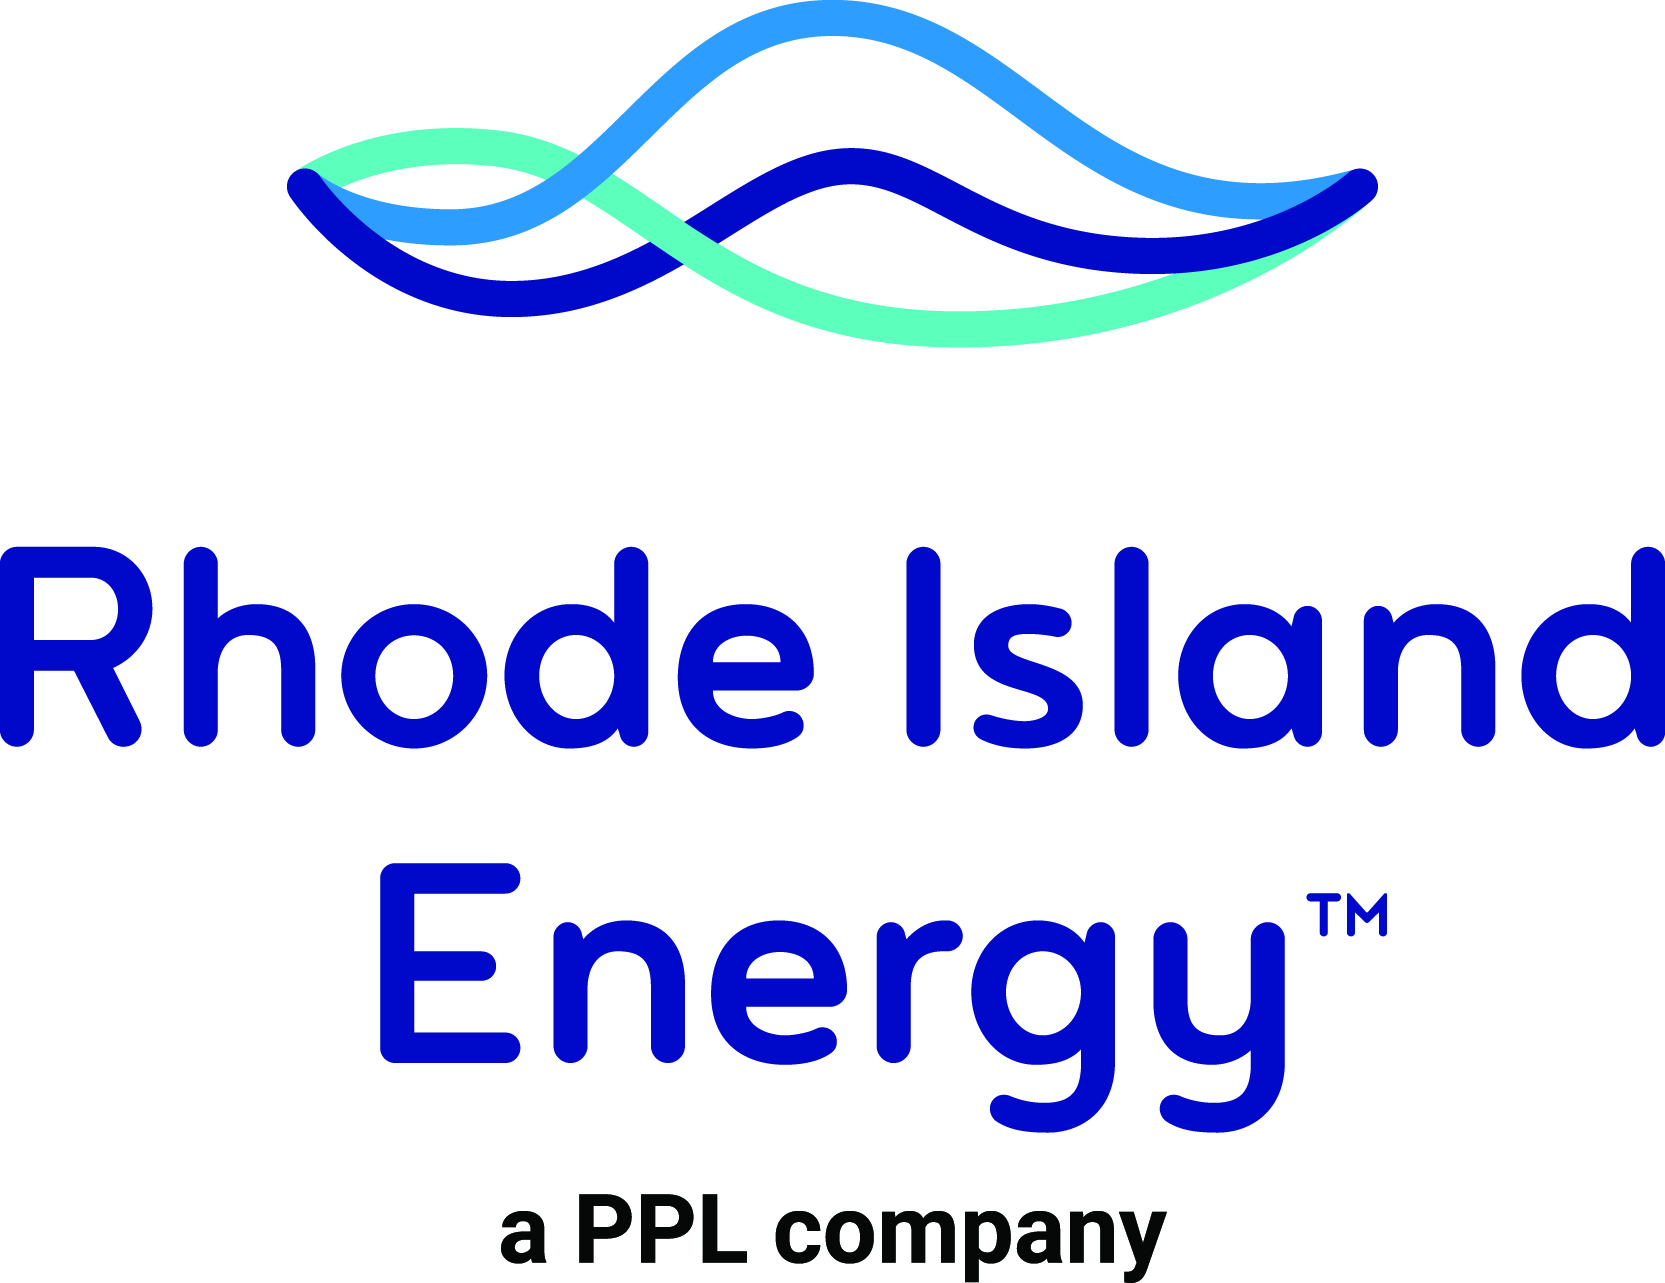 ""Rhode Island Energy